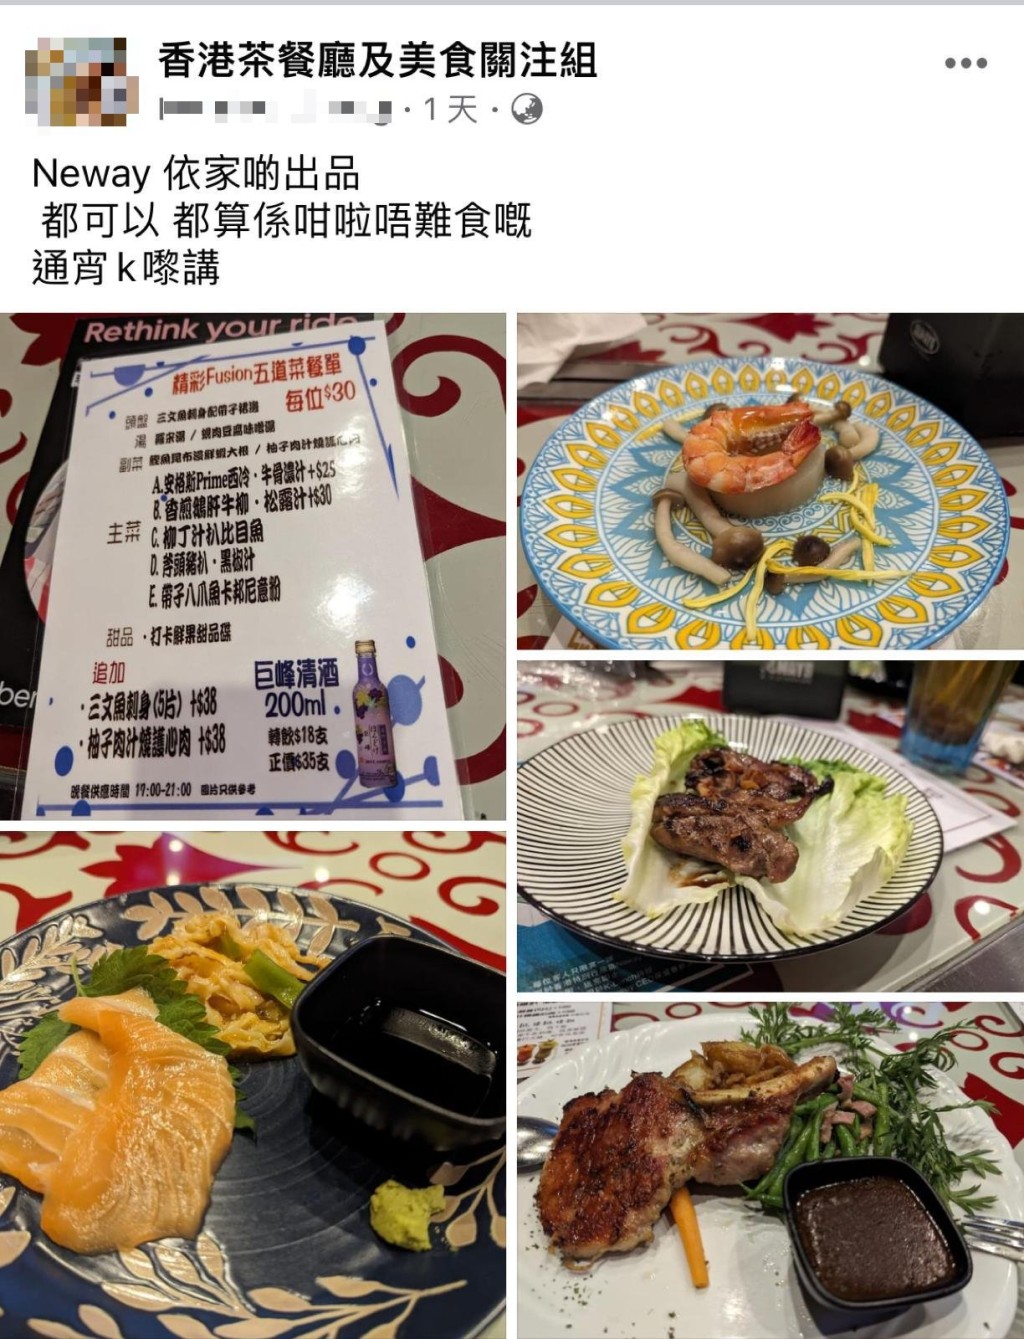 最近有网民在facebook群组「香港茶餐厅及美食关注组」发文，分享最近在Neway唱通宵K「帮衬」了一个$30有道菜的套餐，包括鹅肝牛柳、安格斯西冷及三文鱼刺身等美食。（香港茶餐厅及美食关注组@facebook）